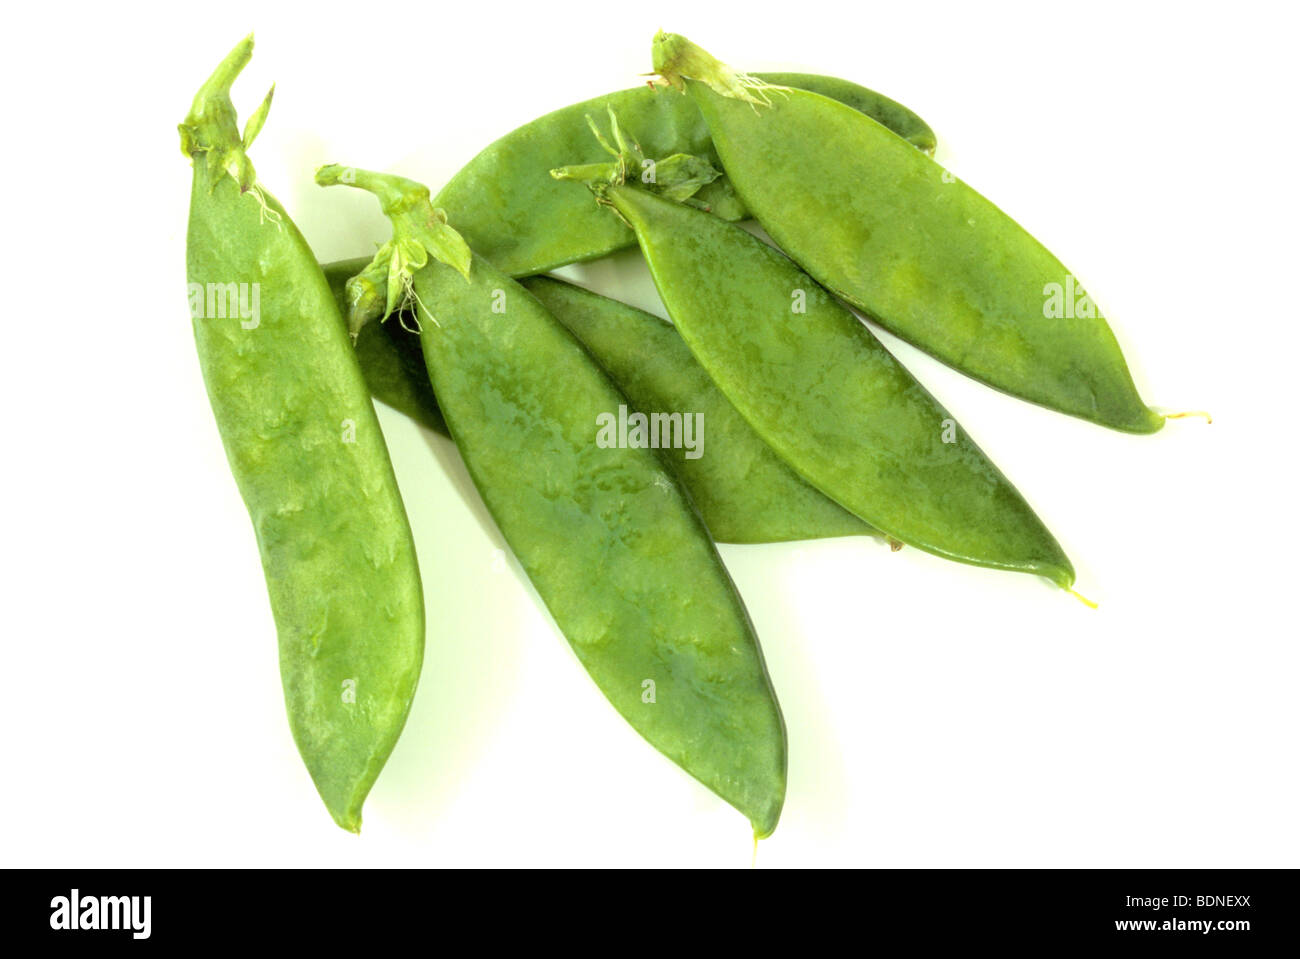 Pea, Garden Pea (Pisum sativum var. saccharatum), pods, studio picture. Stock Photo